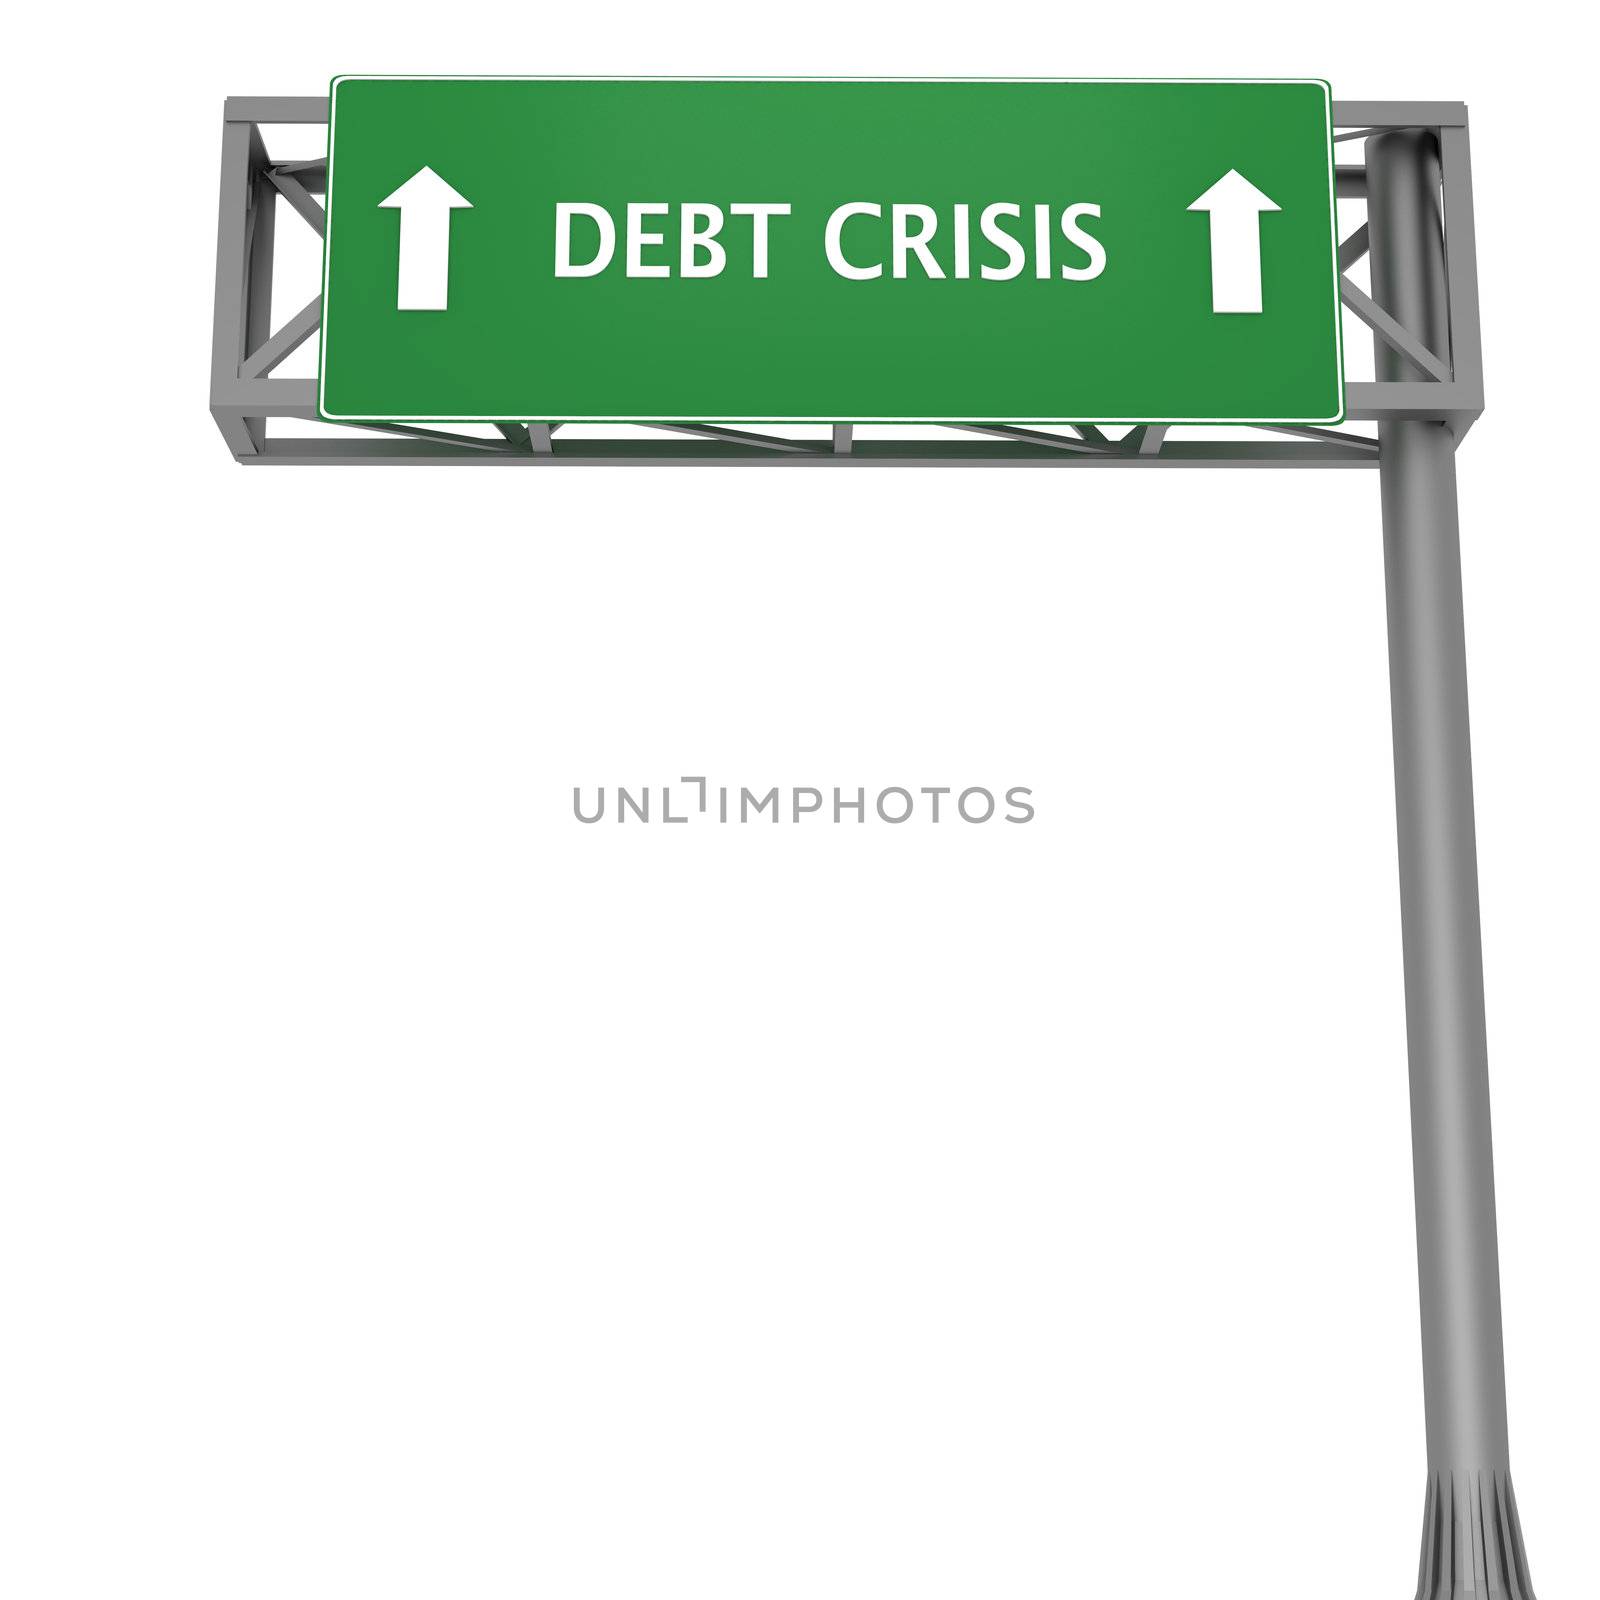 Debt crisis by Harvepino